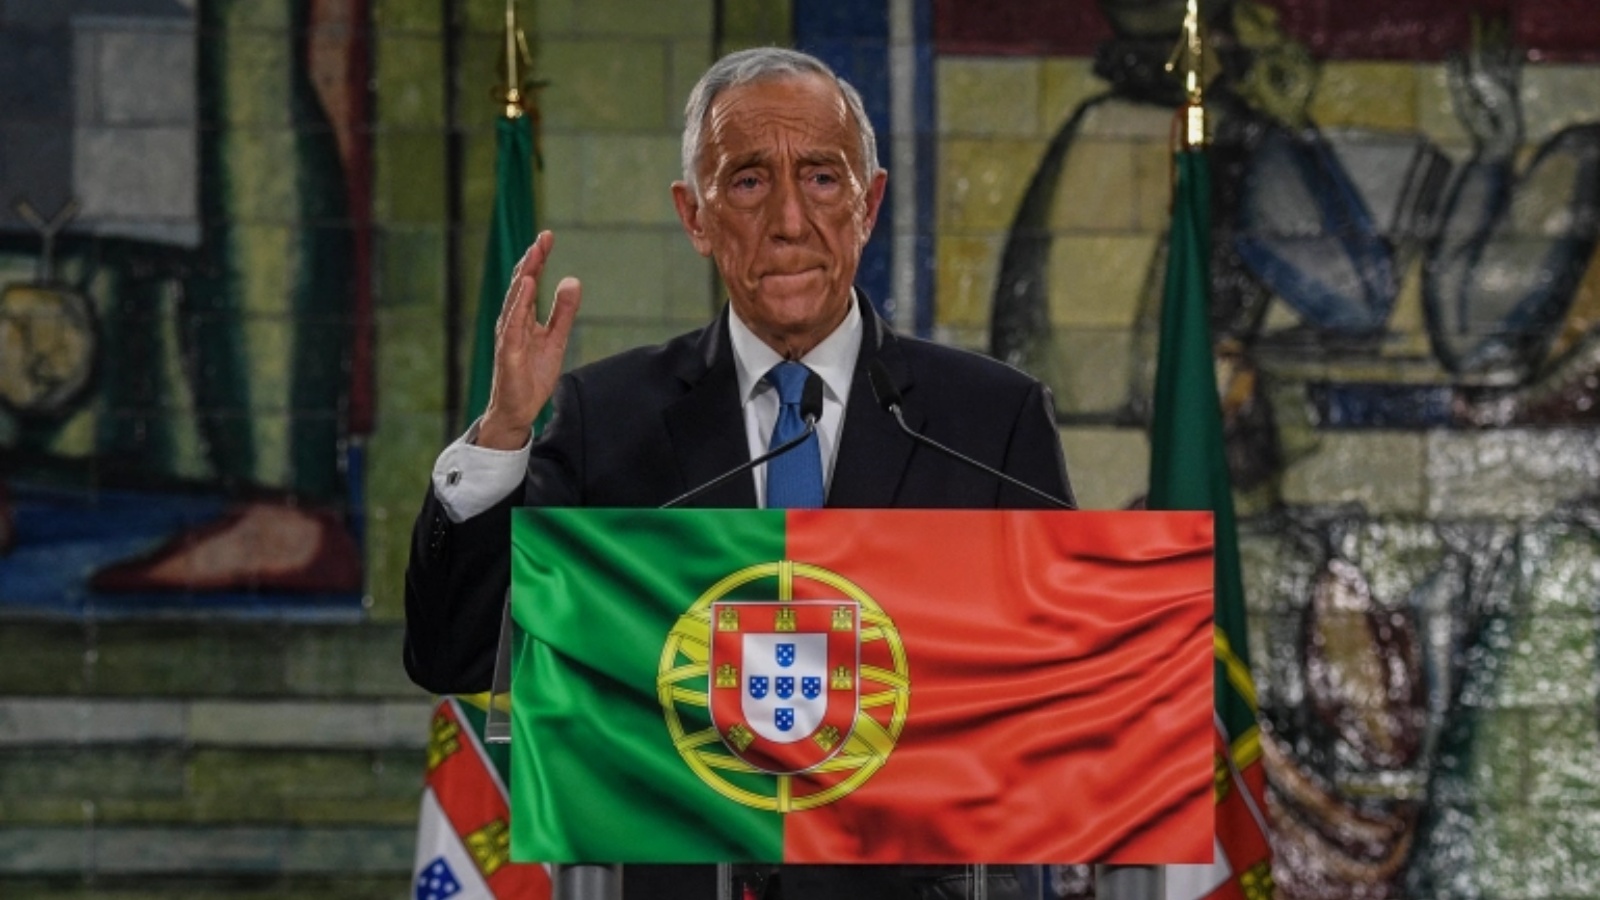 الرئيس البرتغالي مارسيلو ريبيلو دي سوسا. (أرشيفية)